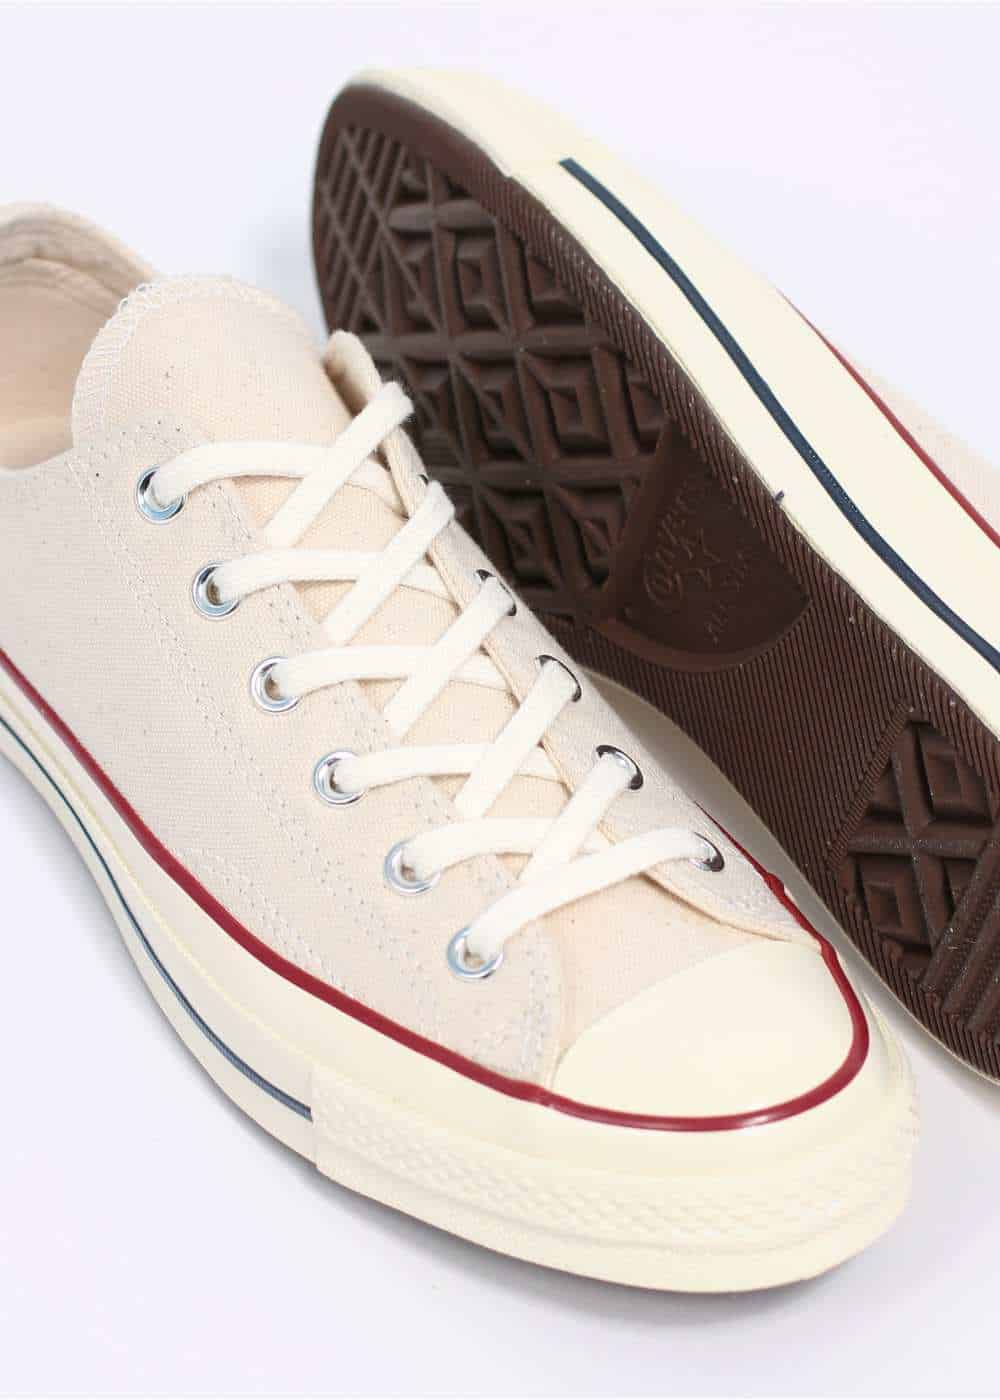 Giày Converse cổ thấp rep 11 có kiểu dáng gọn nhẹ, tối giản, tạo cảm giác thoải mái khi mang